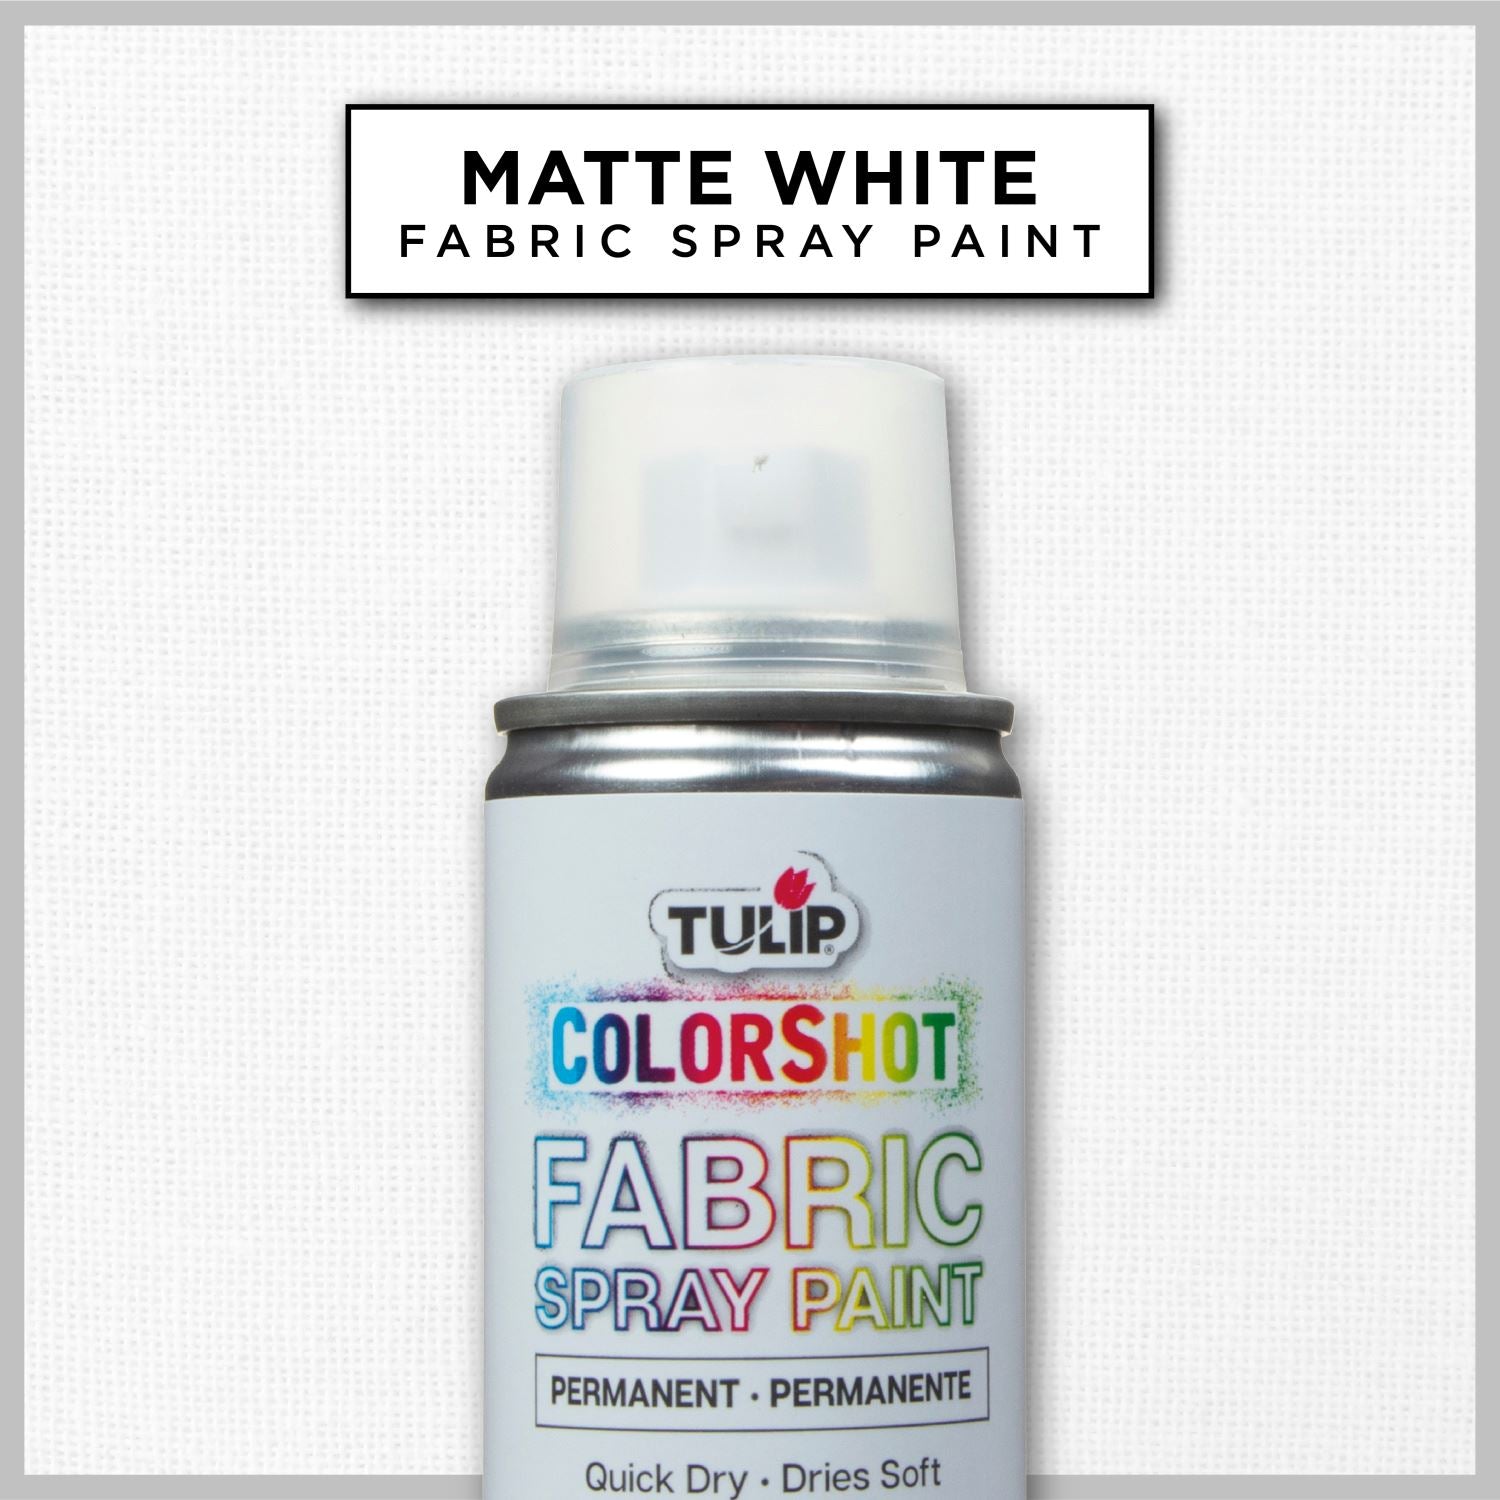 Tulip Color Shot Instant Fabric Color Spray 3Oz-Silver Glitter